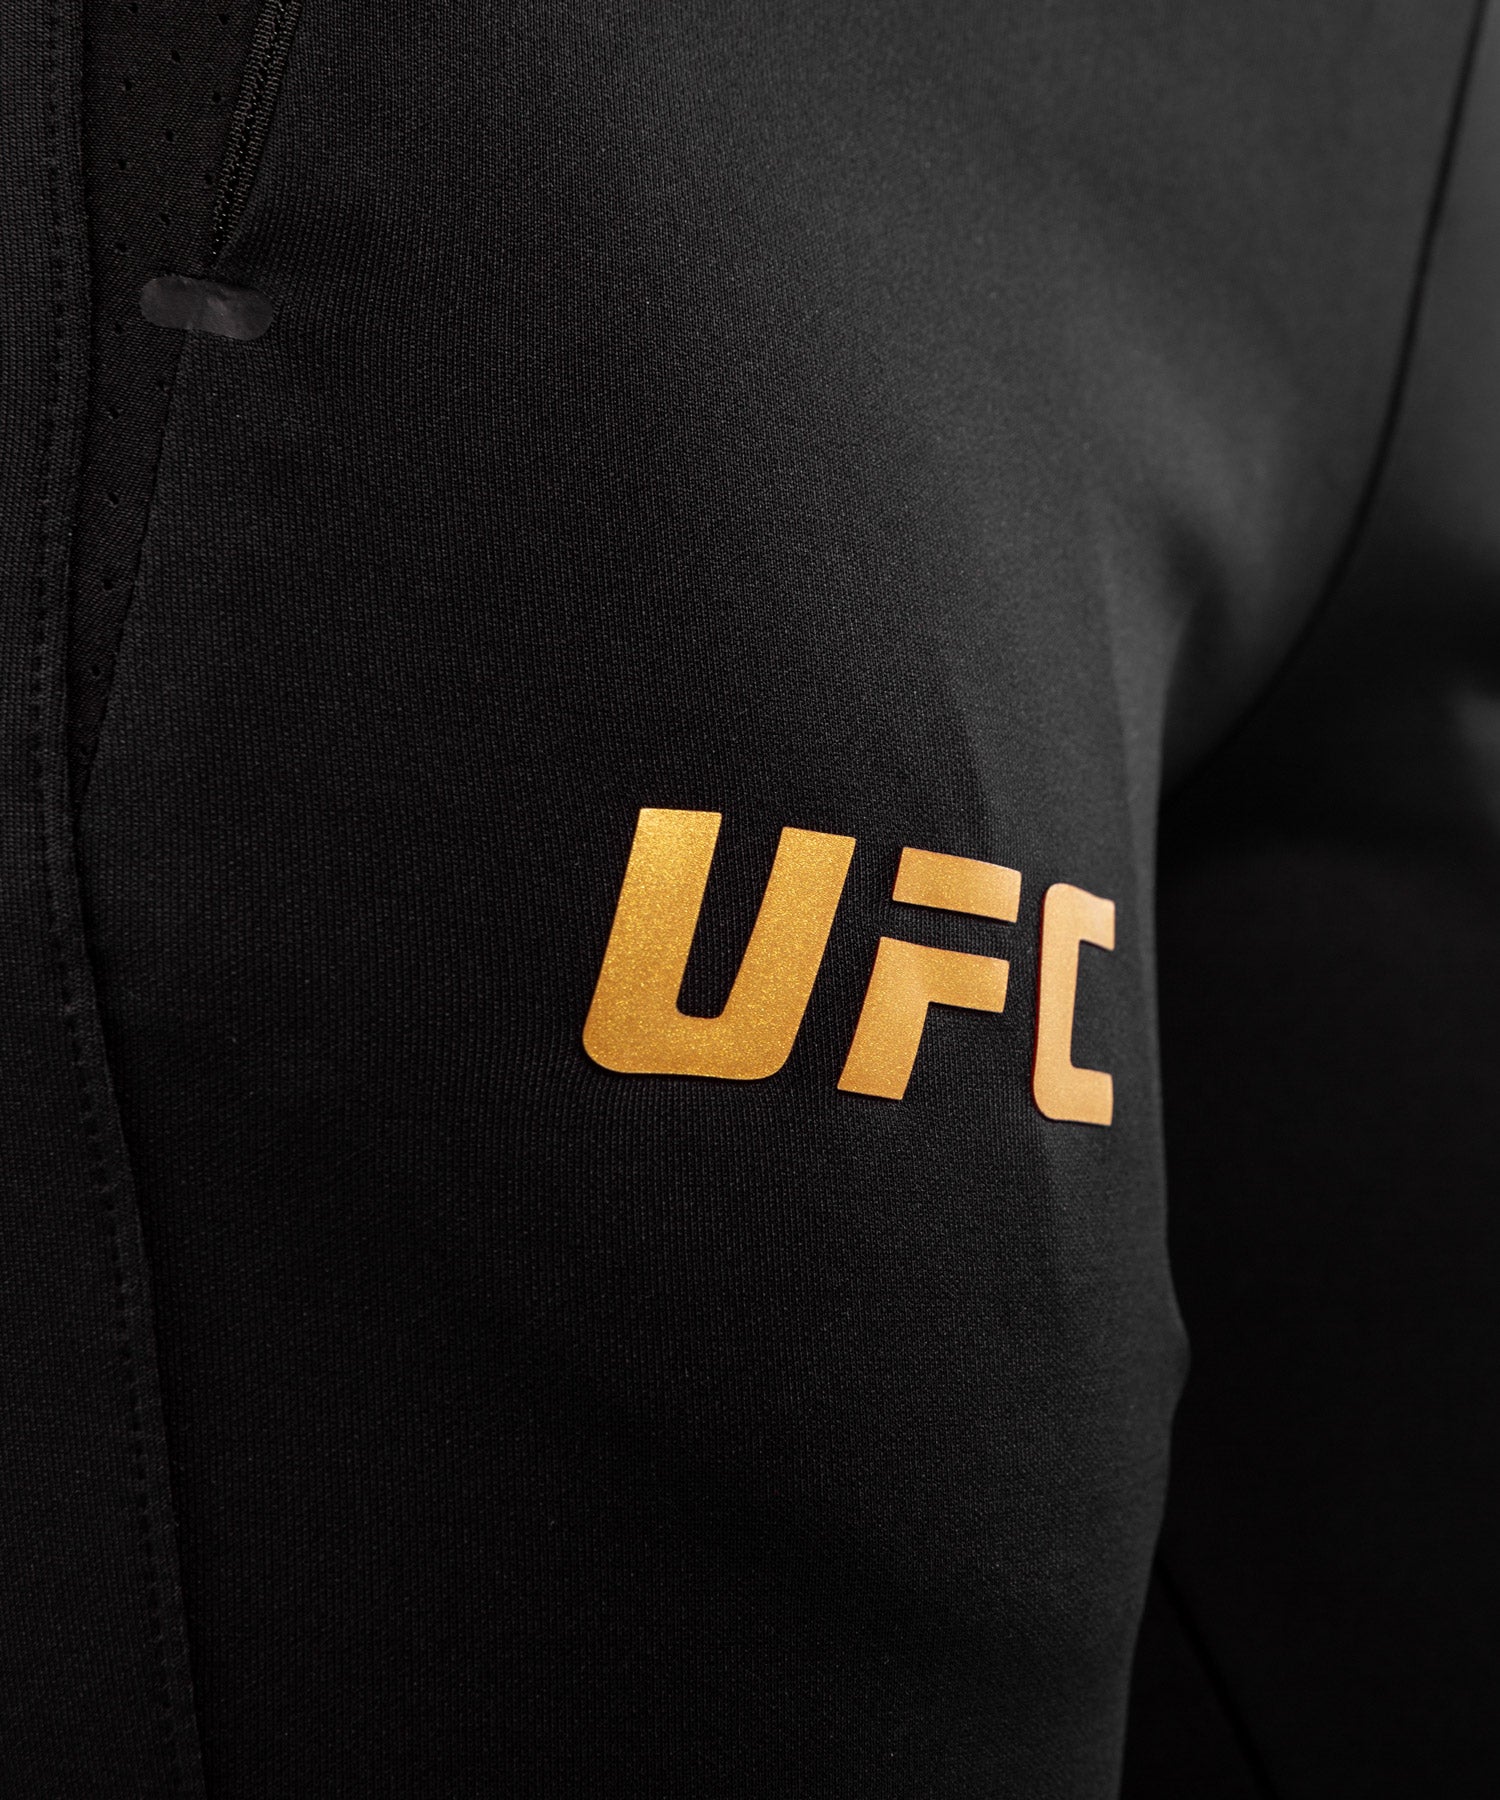 Pantalon de Jogging Femme UFC Venum Authentic Fight Night - Noir